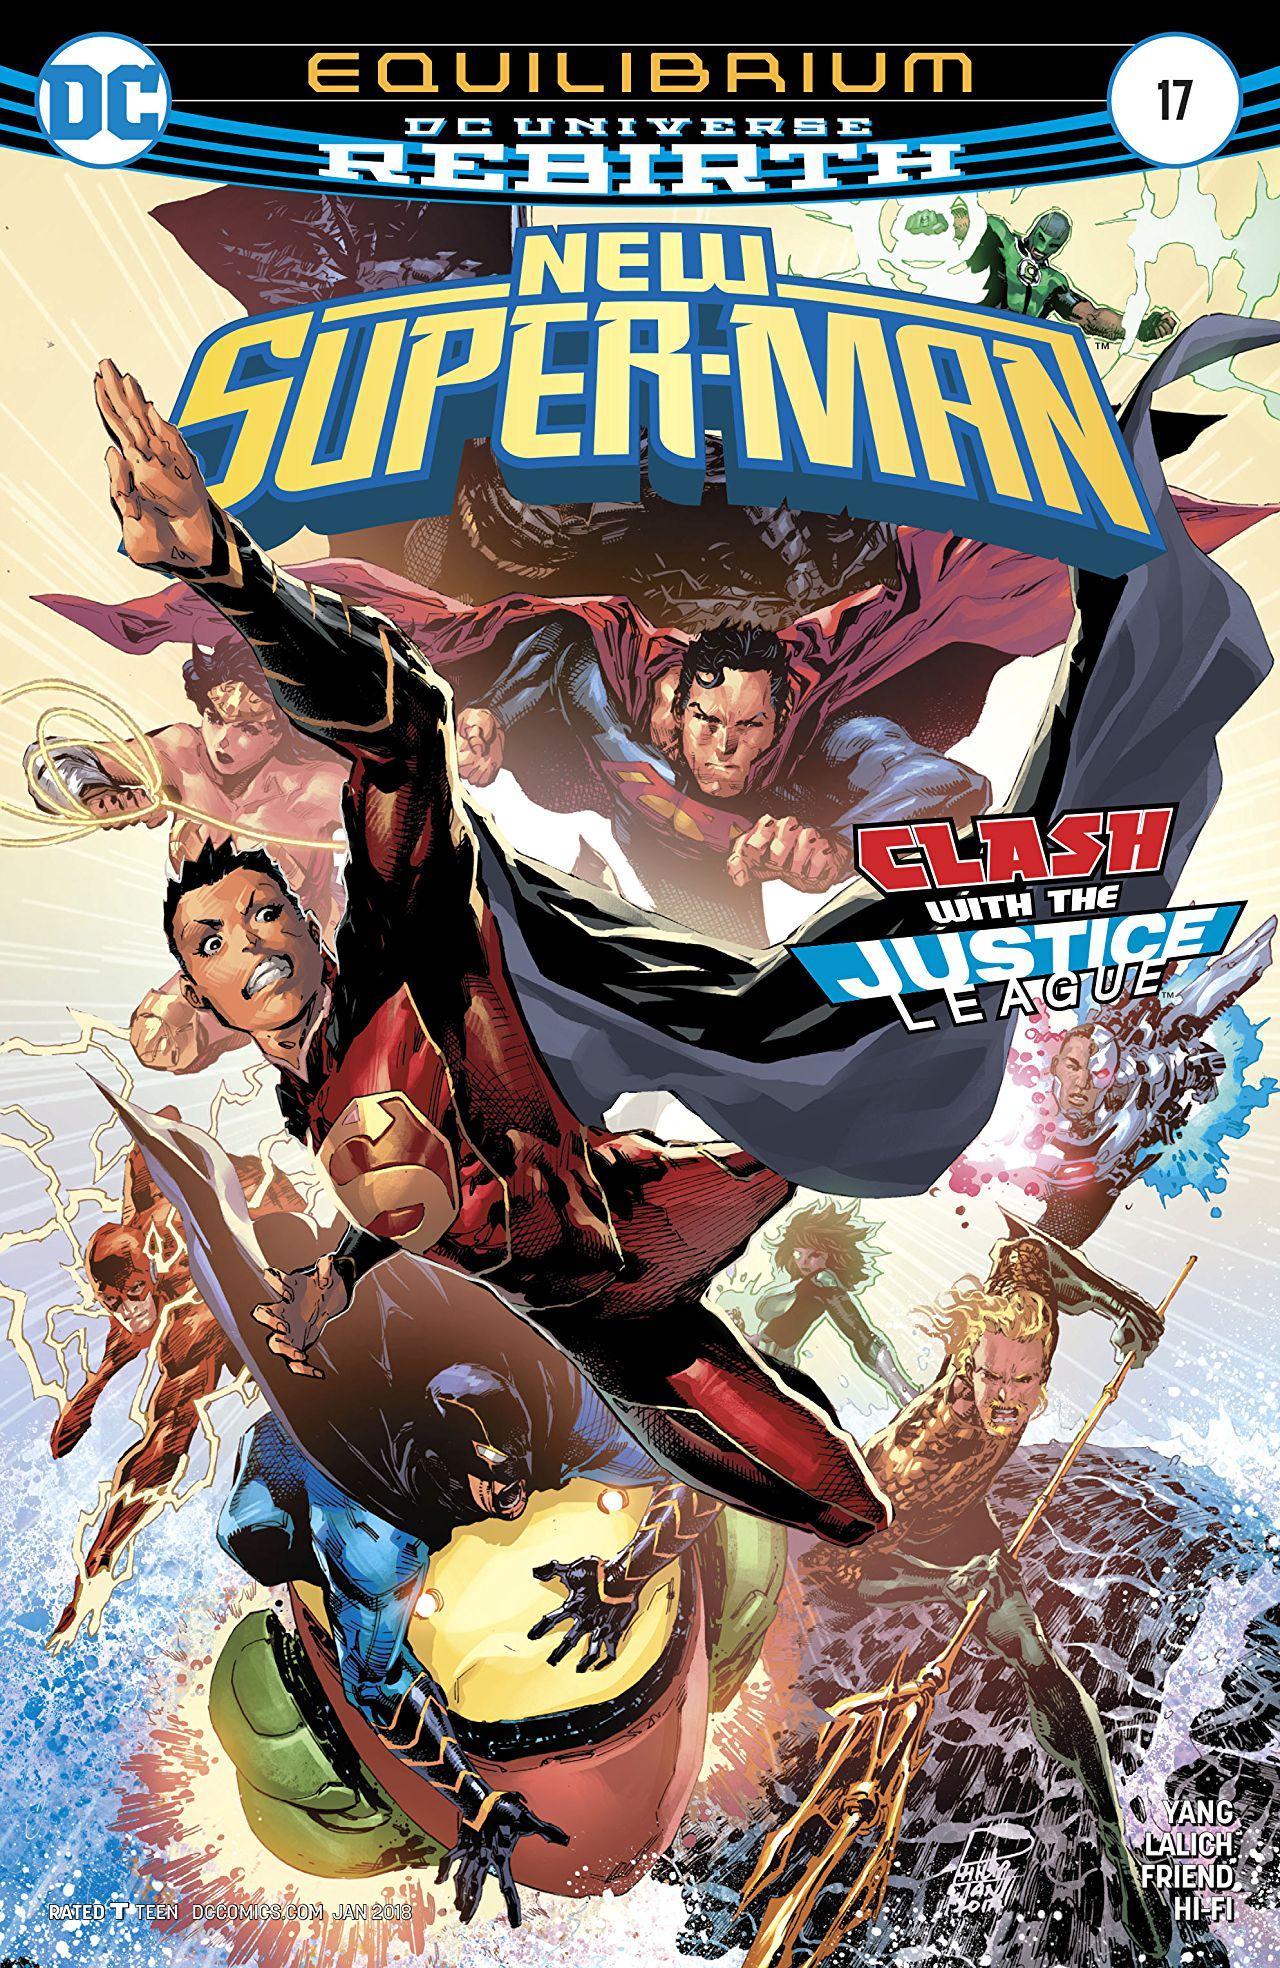 New Super-Man Vol. 1 #17